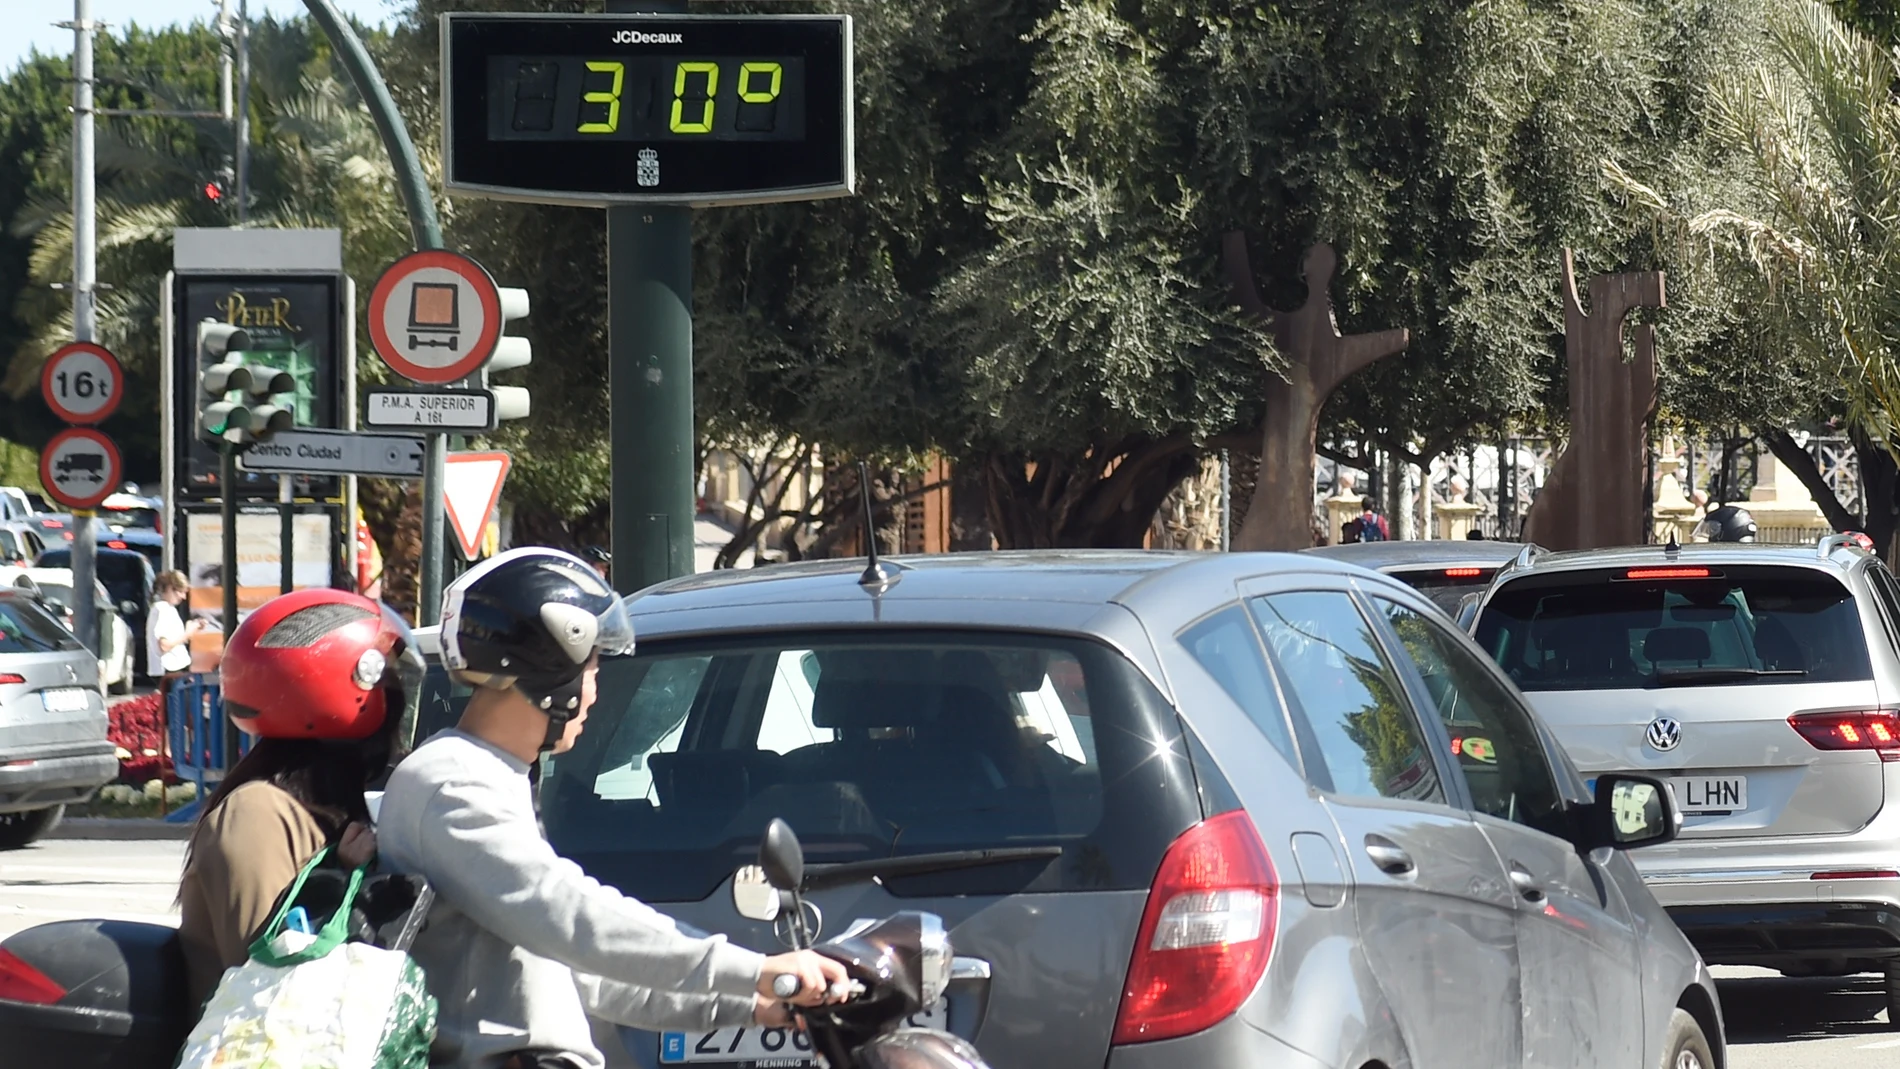 Murcia registrará más calor este fin de semana que El Cairo (Egipto), según eltiempo.es